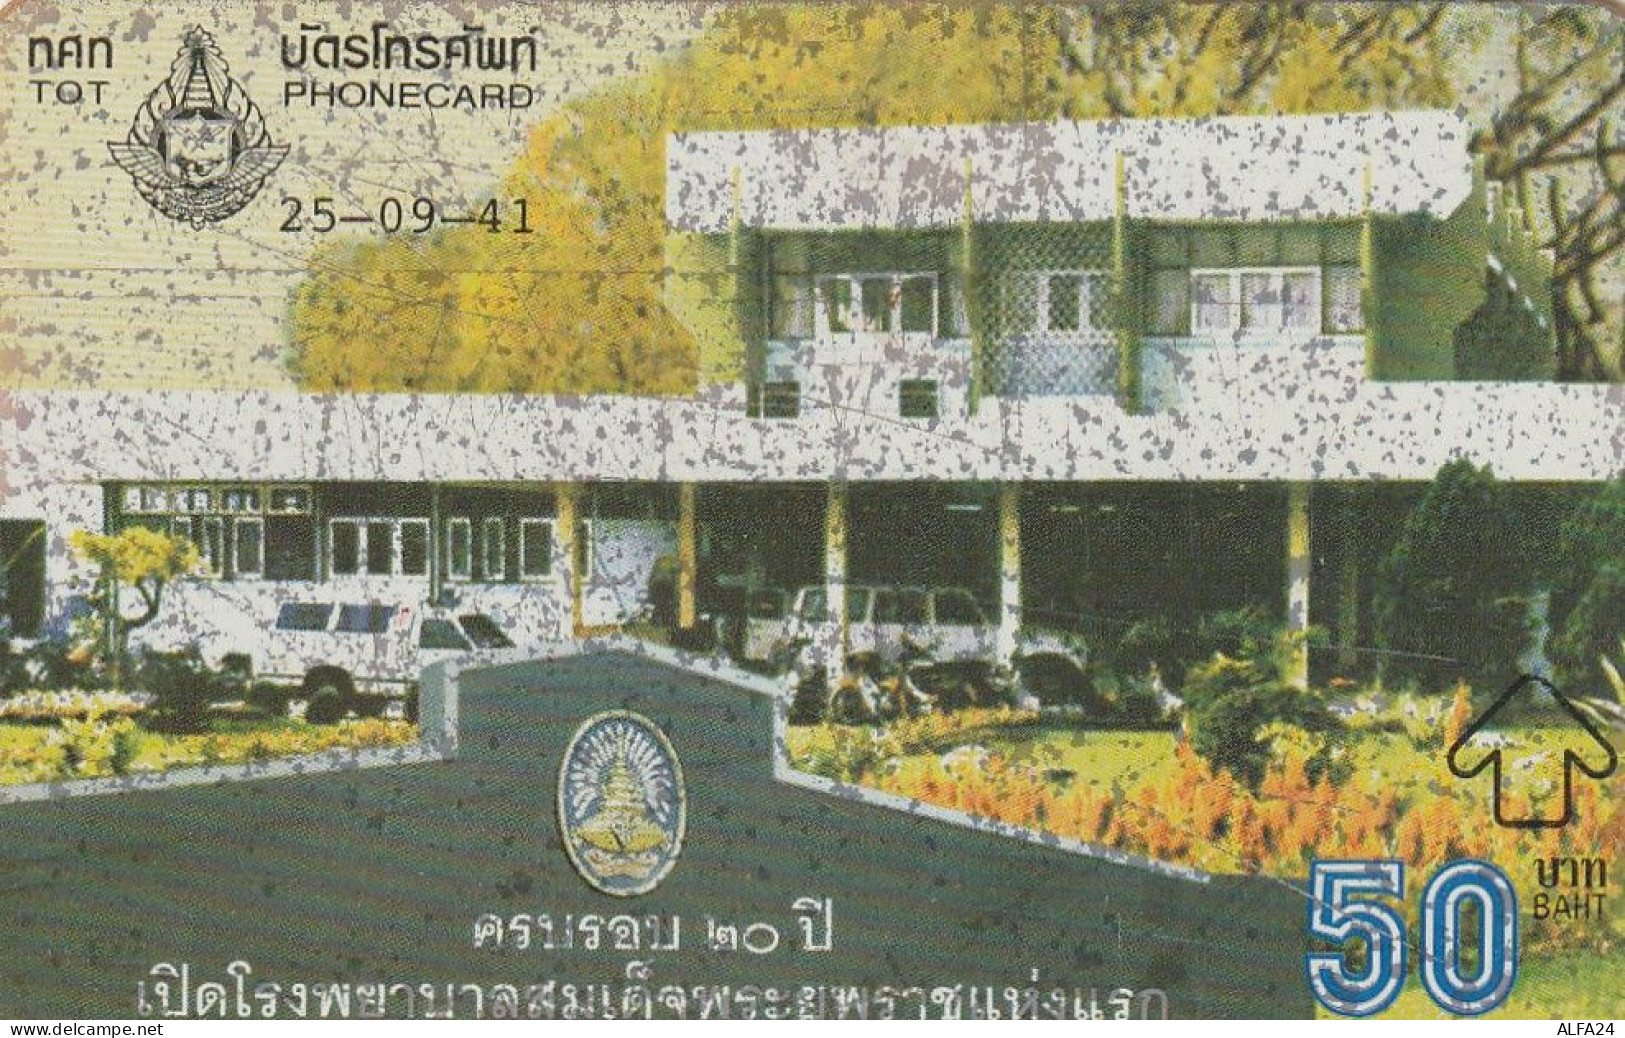 PHONE CARD THAILANDIA  (CZ1230 - Thailand